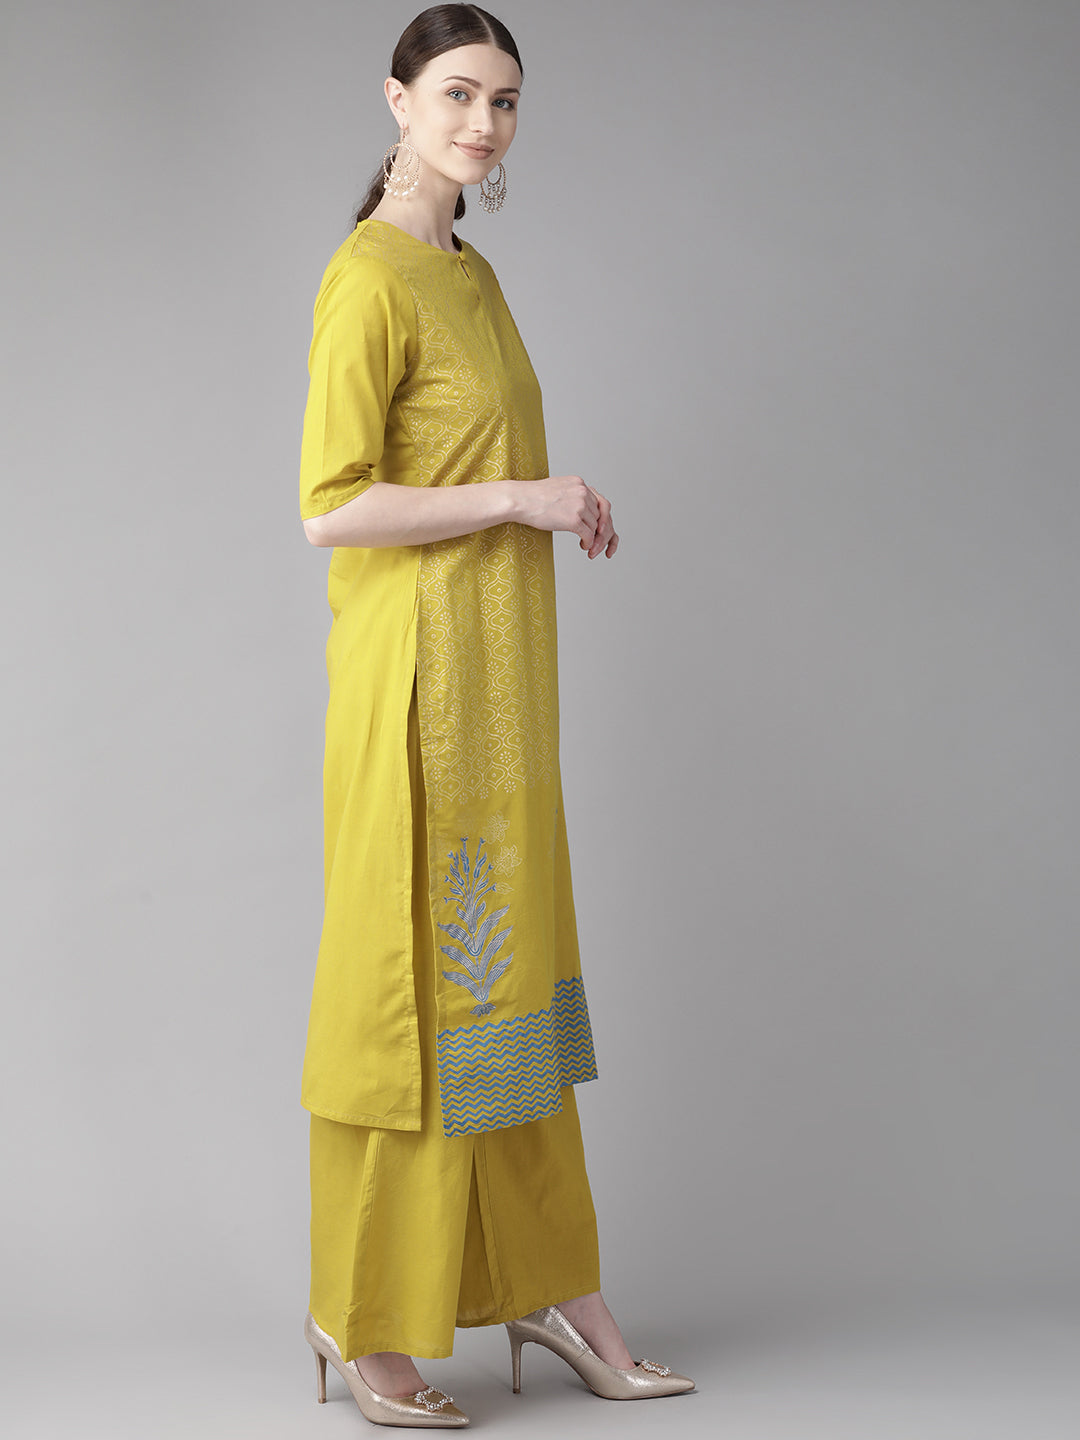 Bhama Couture Women Mustard Yellow & Off-White Block Printed Kurta with Palazzos